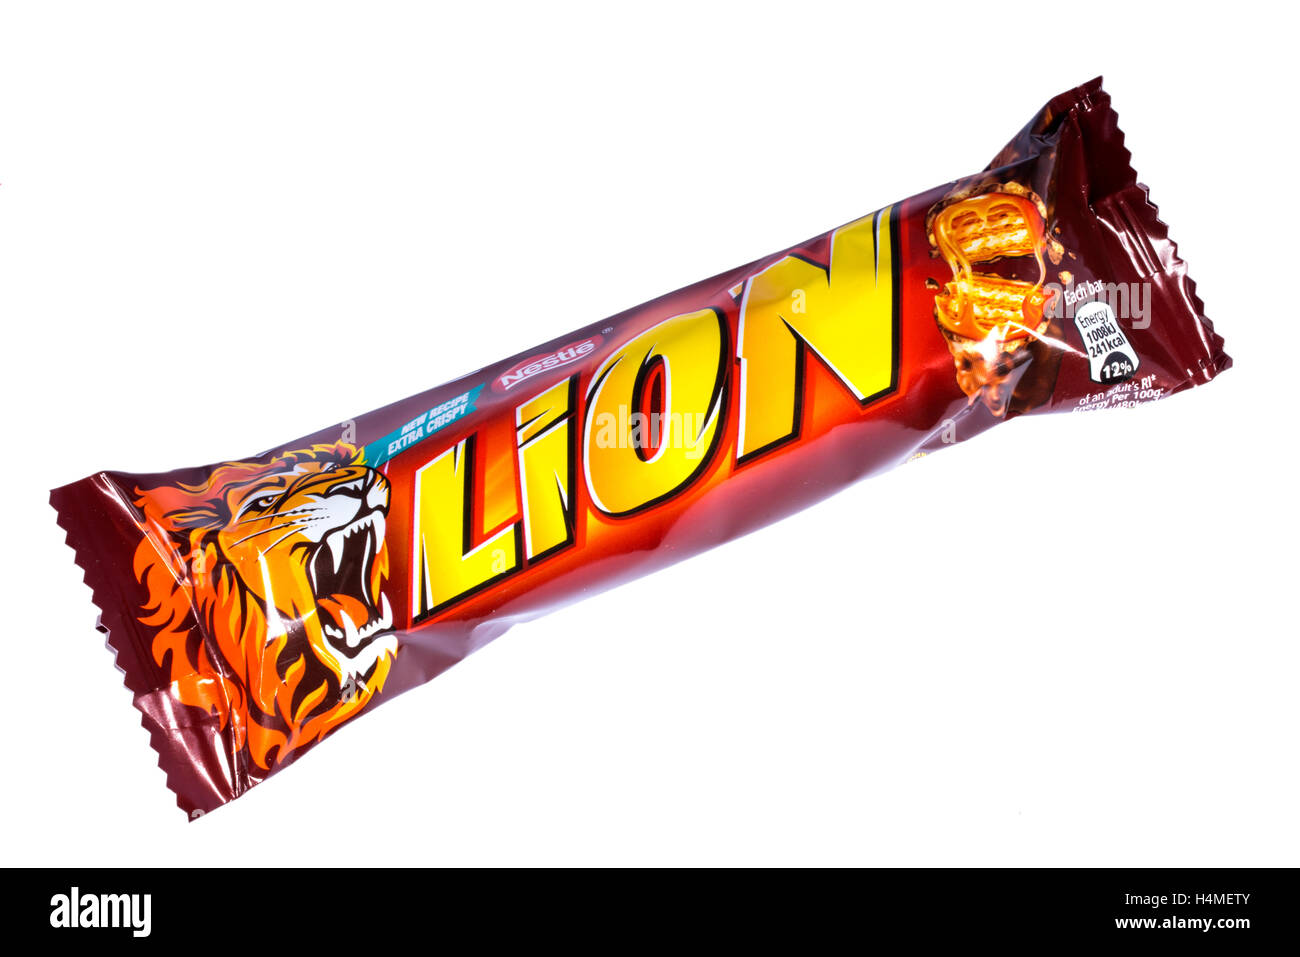 Londres, Royaume-Uni - 13 octobre 2016 : Un Lion non ouvert barre de chocolat fabriqués par Nestlé. Banque D'Images